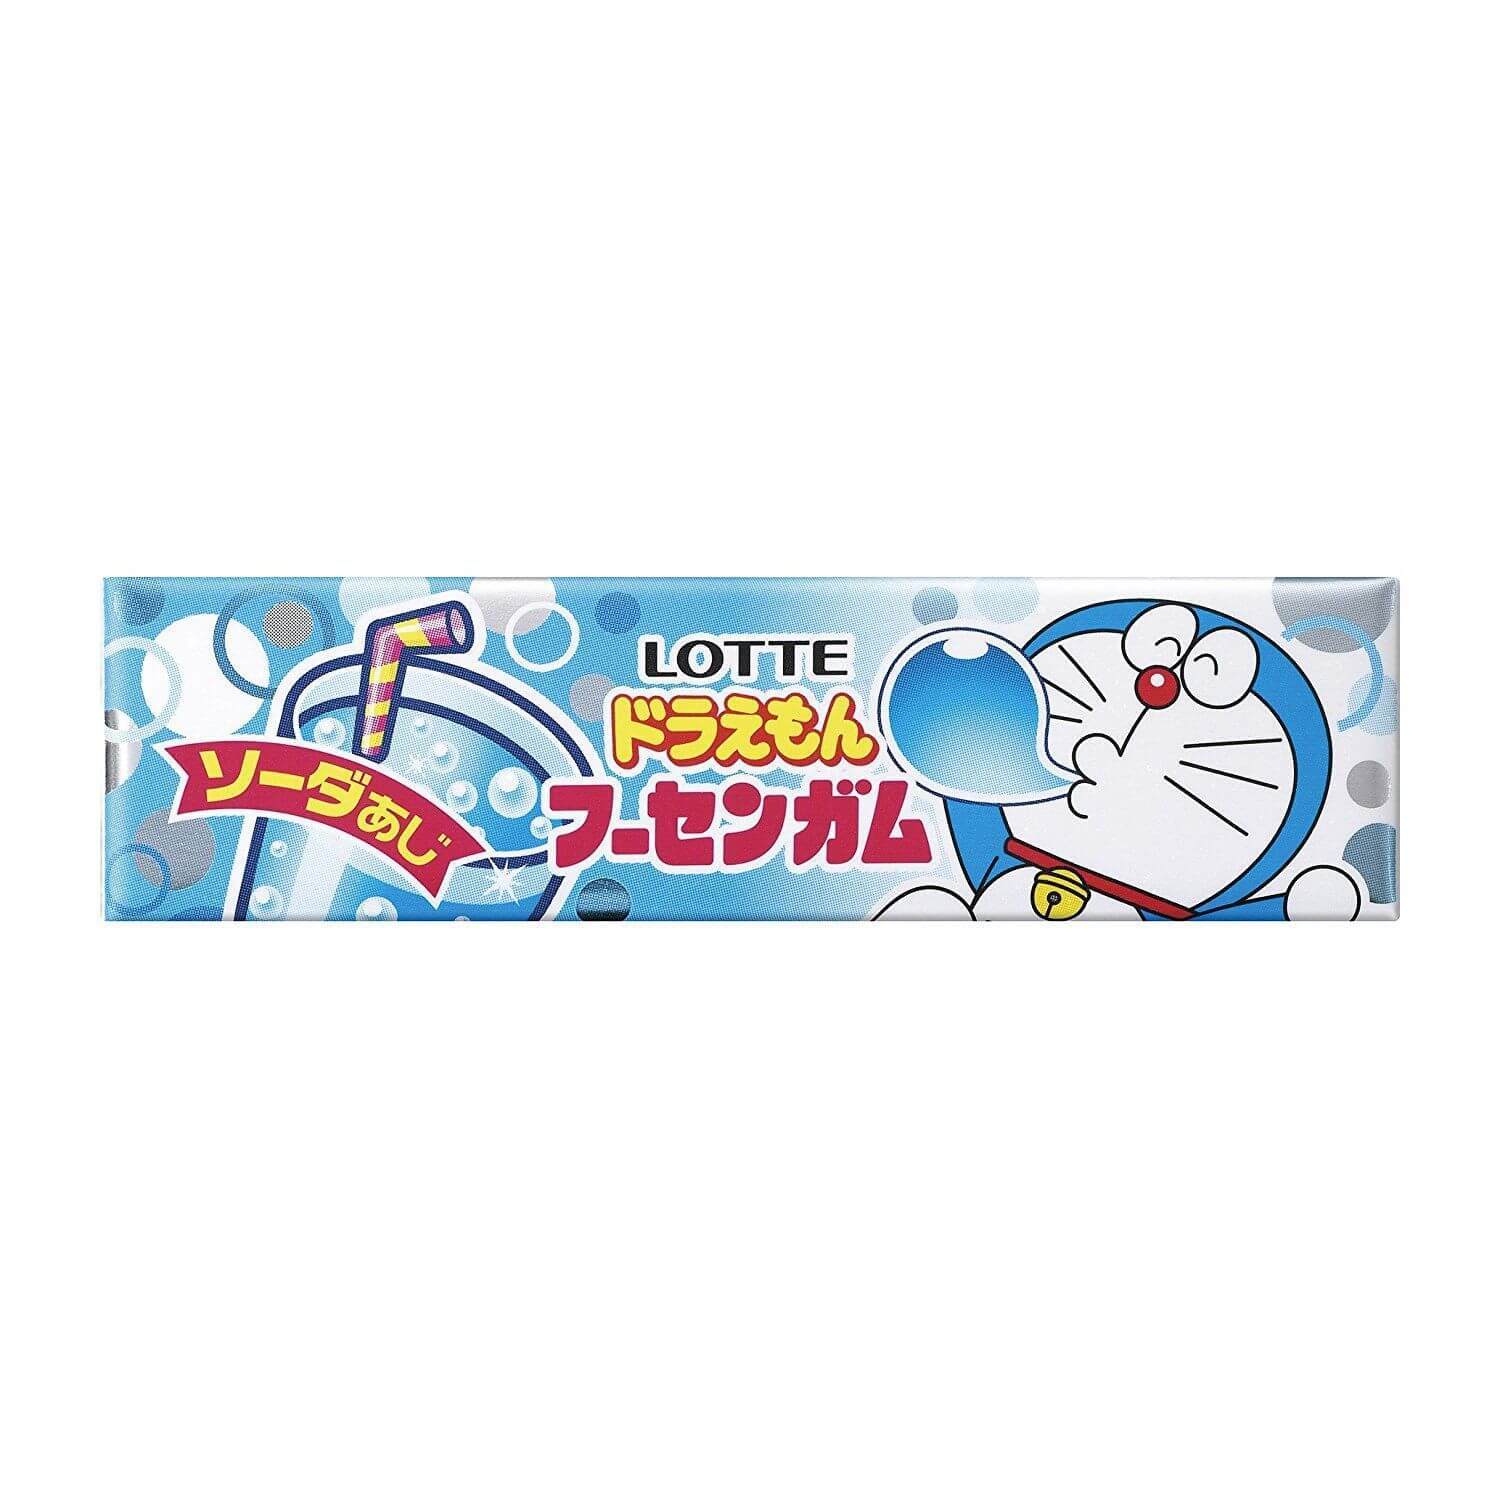 Lotte Doraemon Bubble Gum - 25g